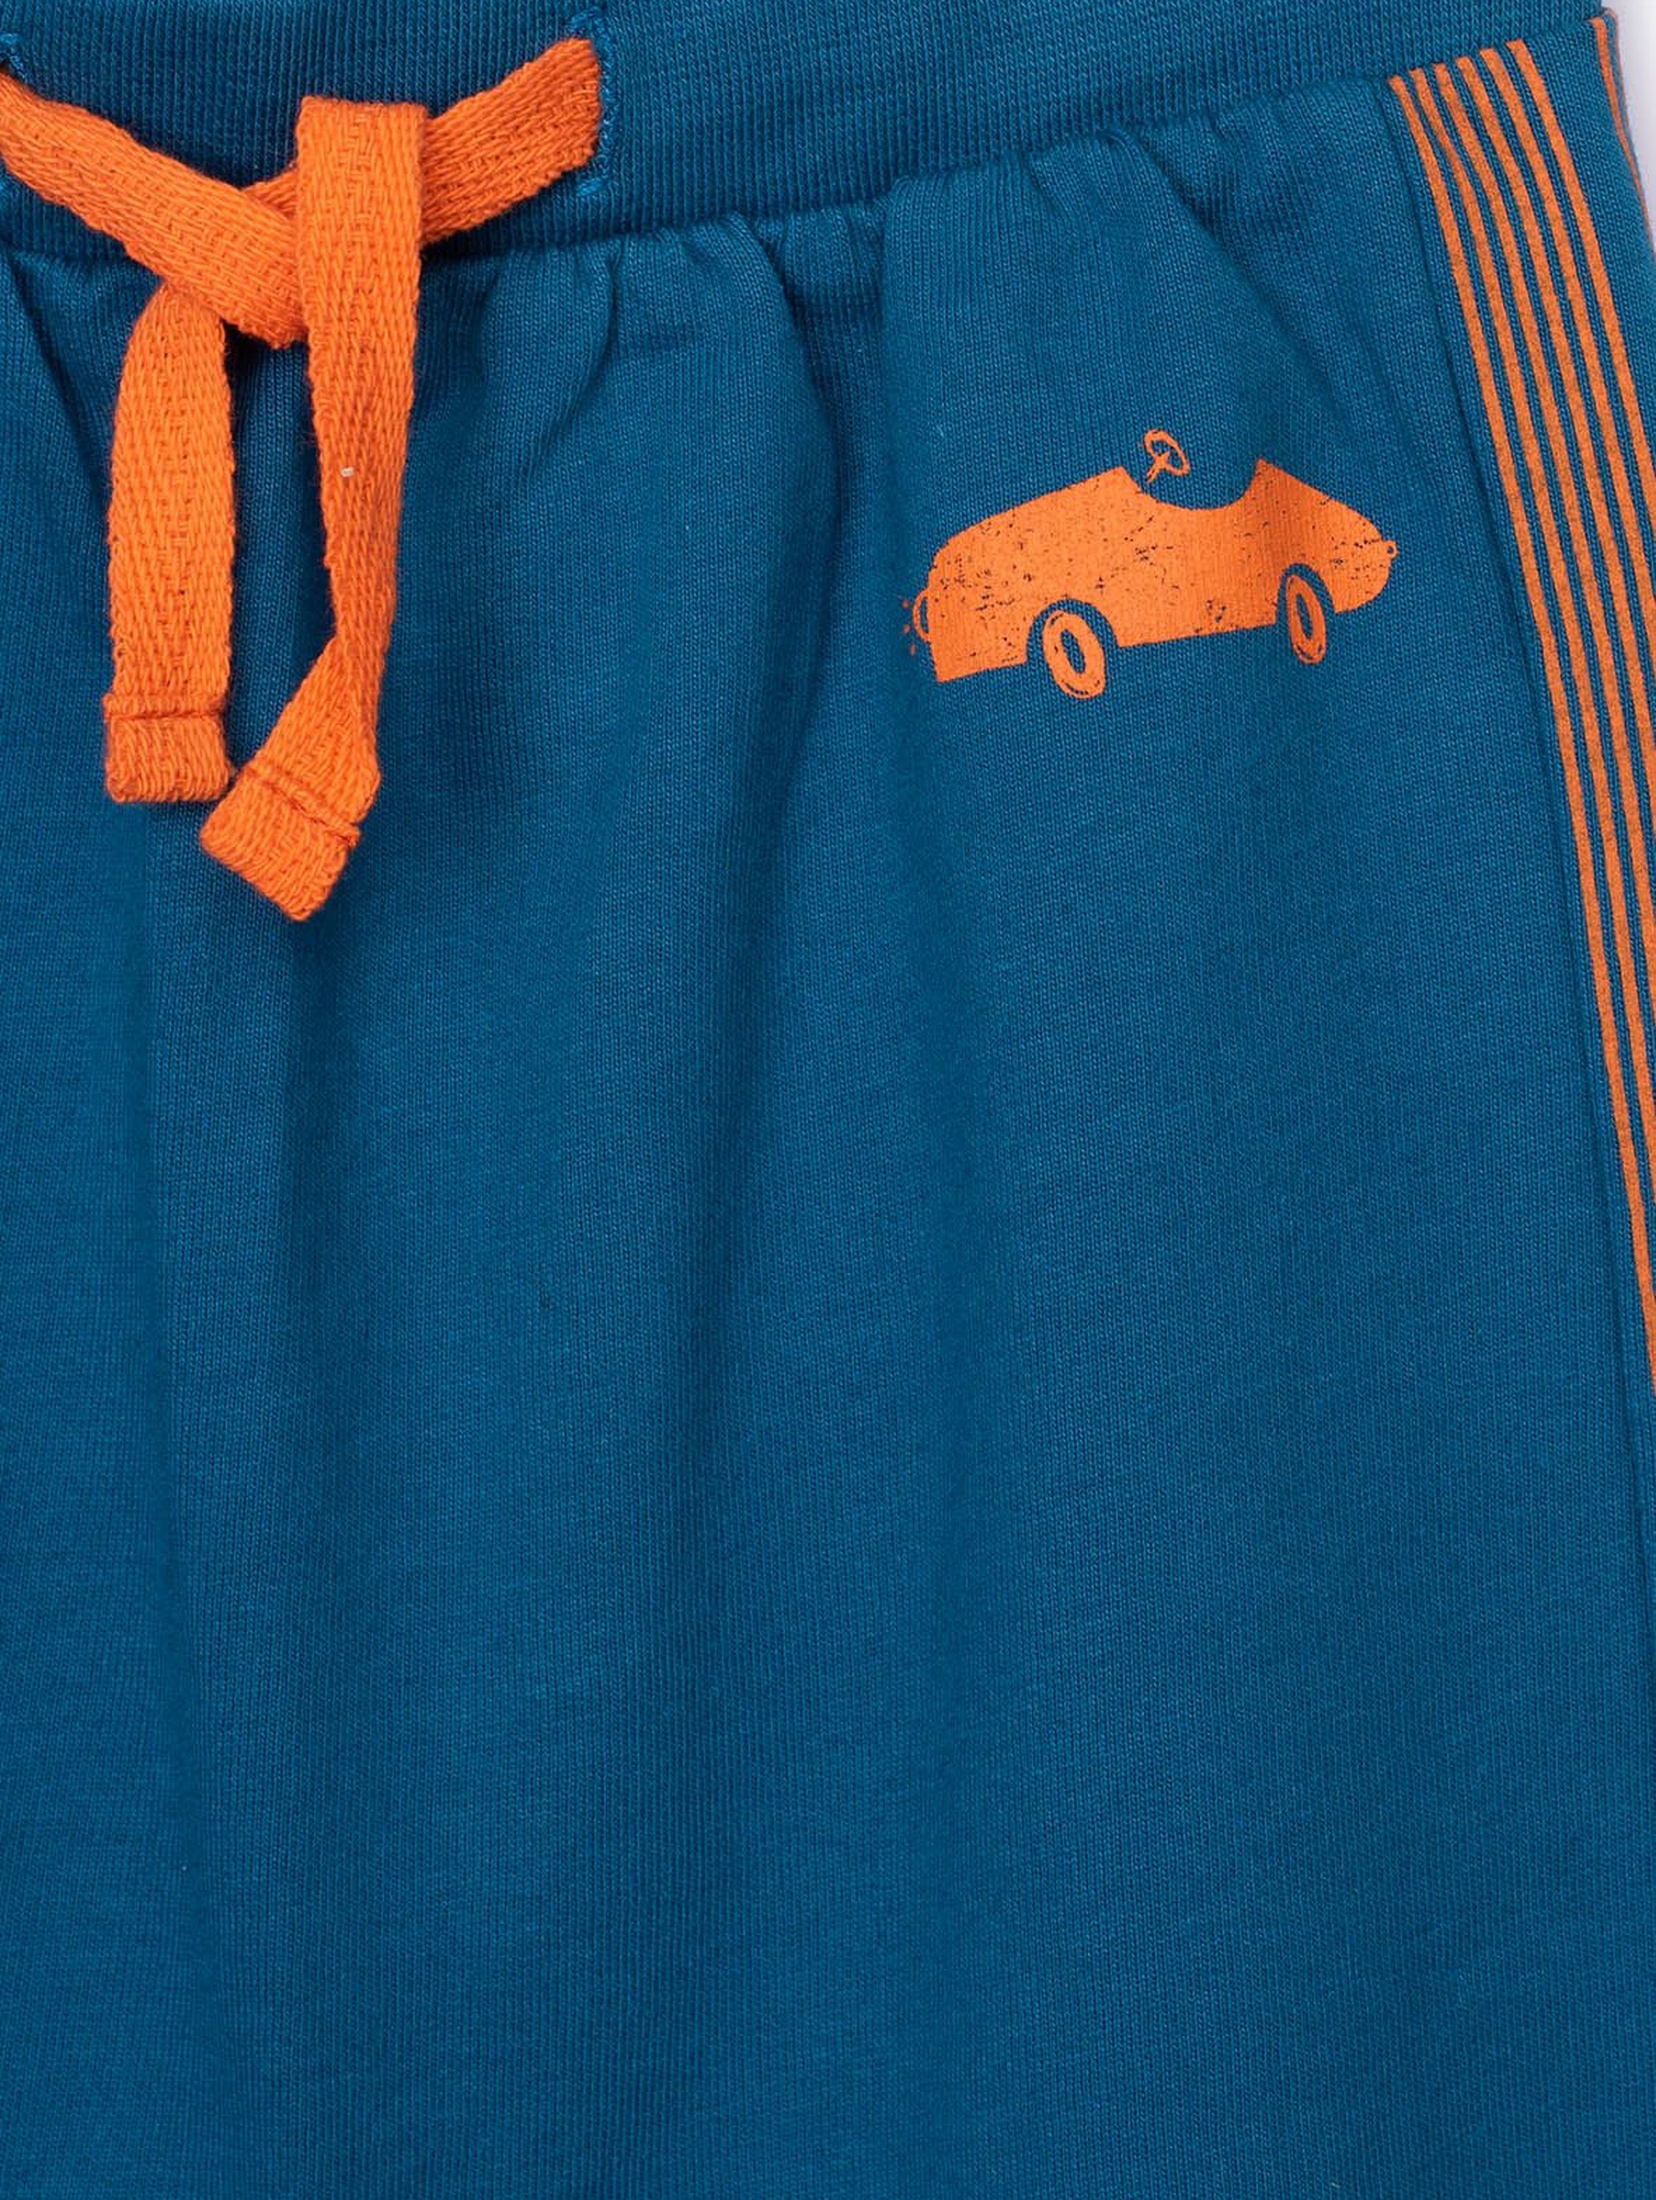 Niebieskie spodnie dresowe niemowlęce z pomarańczowymi wstawkami